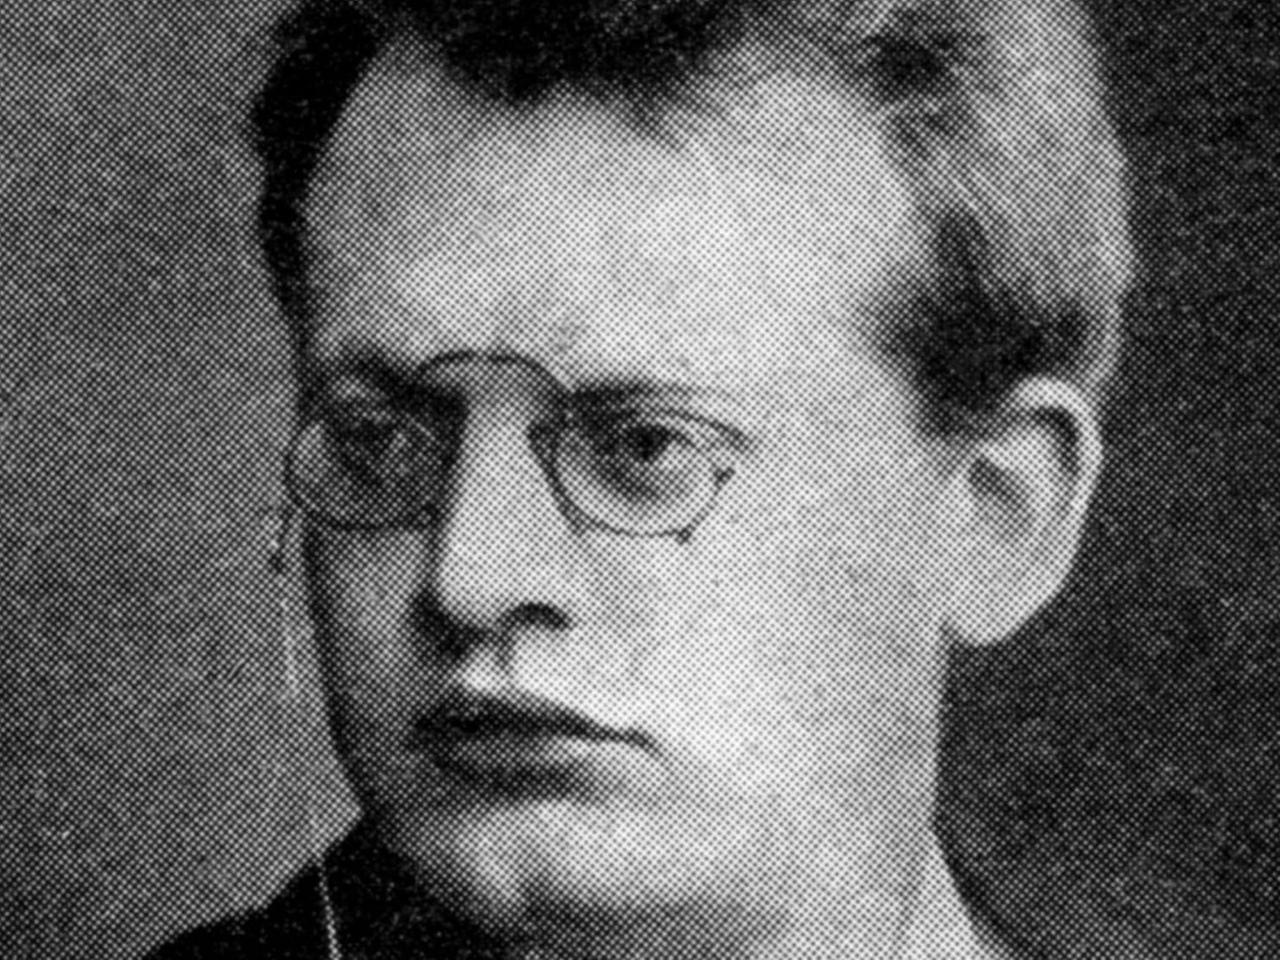 Schwarz-weiß-Aufnahme eines Mannes mit Brille, üppigen Lippen und einem ernsten Gesichtsausdruck.